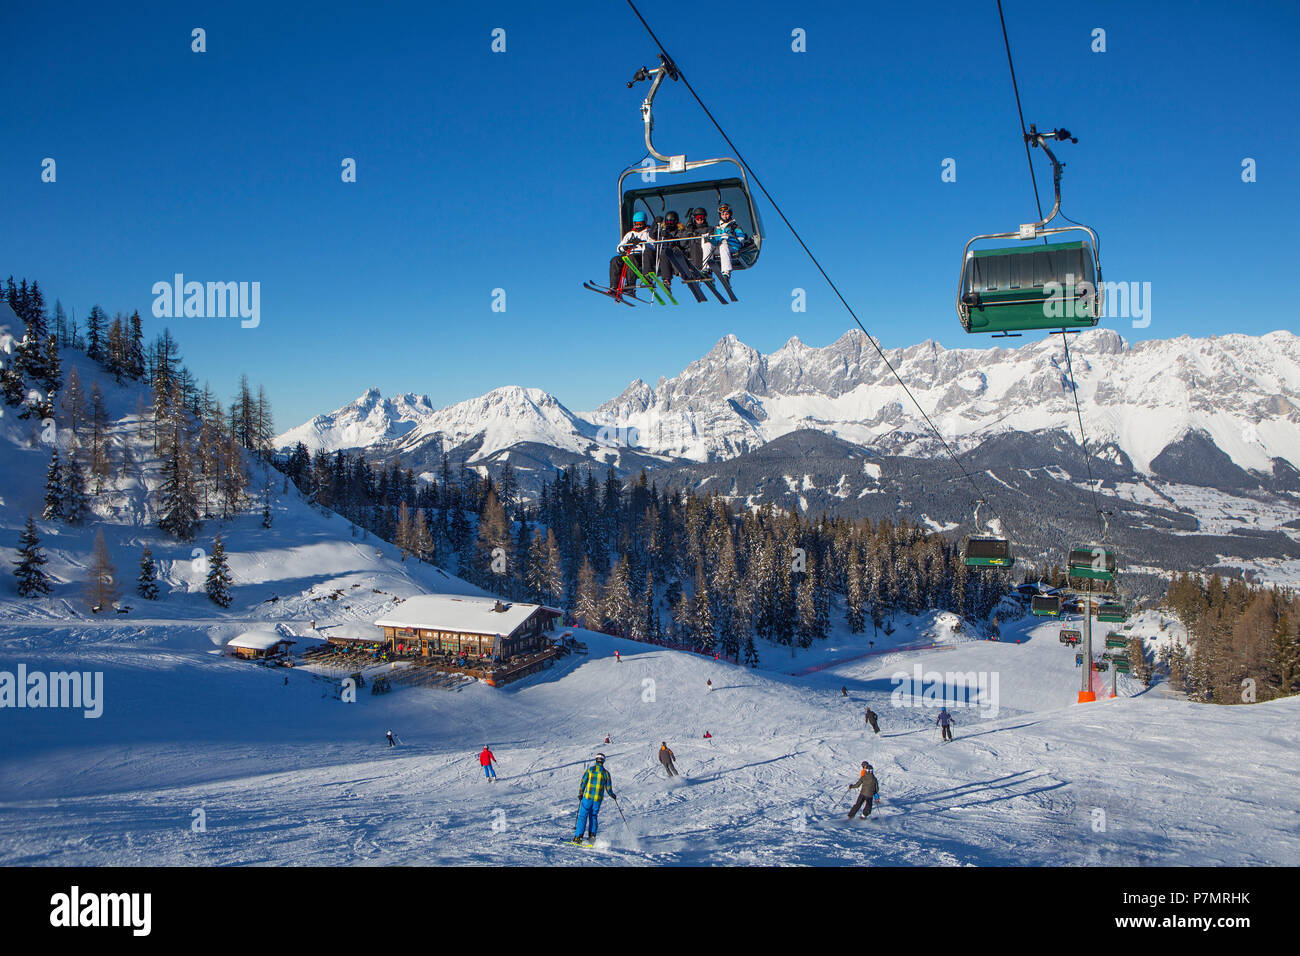 Austria, Styria, Liezen district, Schladming, Gleiming, Reiteralm, Reiteralm ski area, Seppn Jet, view to the Dachstein massif, Stock Photo